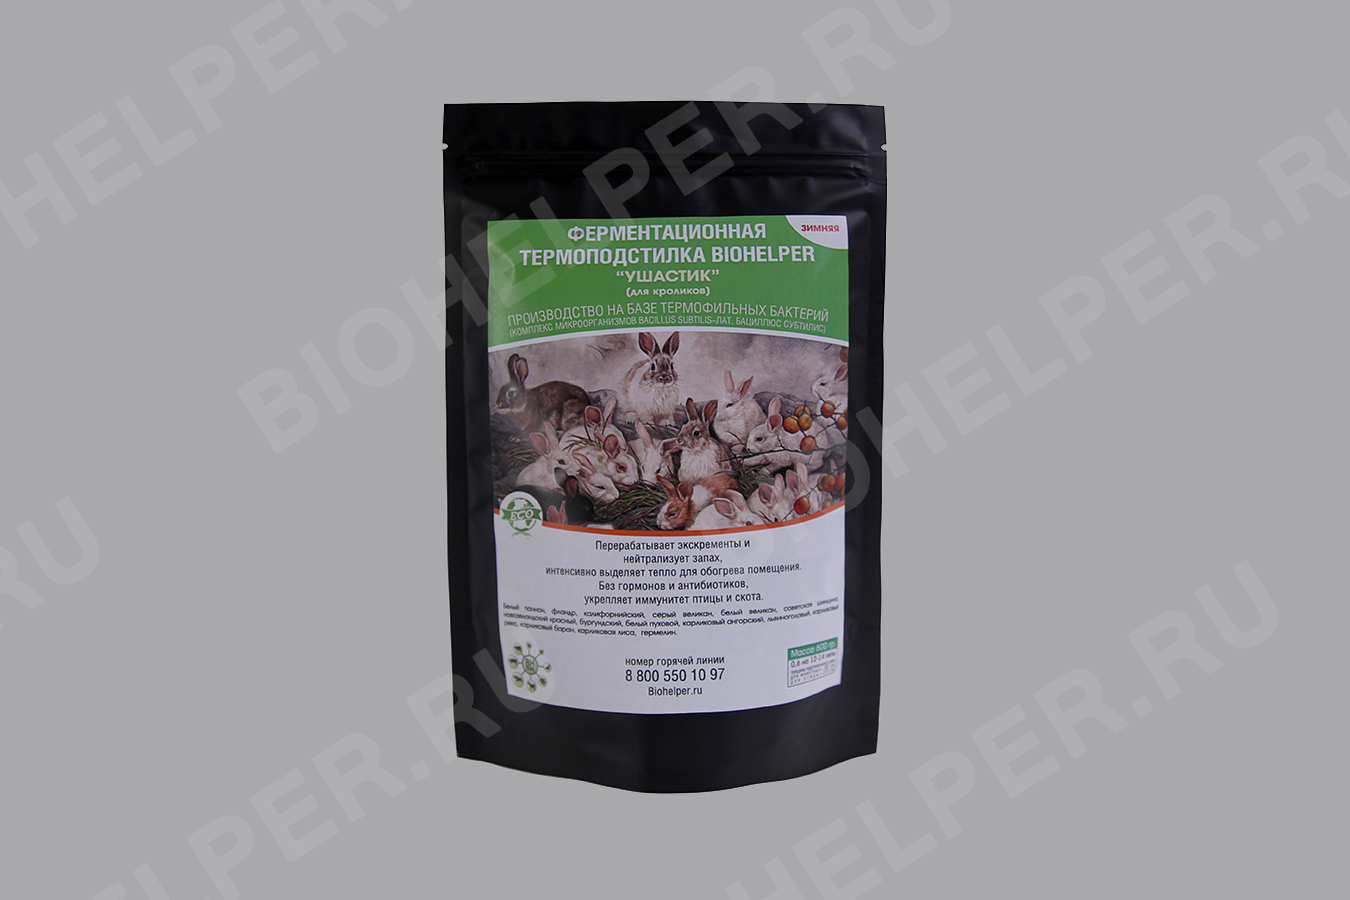 Ферментационная биоподстилка (бактерии) для содержания кроликов и пушных зверей "Биохелпер Ушастик" - Зимняя 300 гр